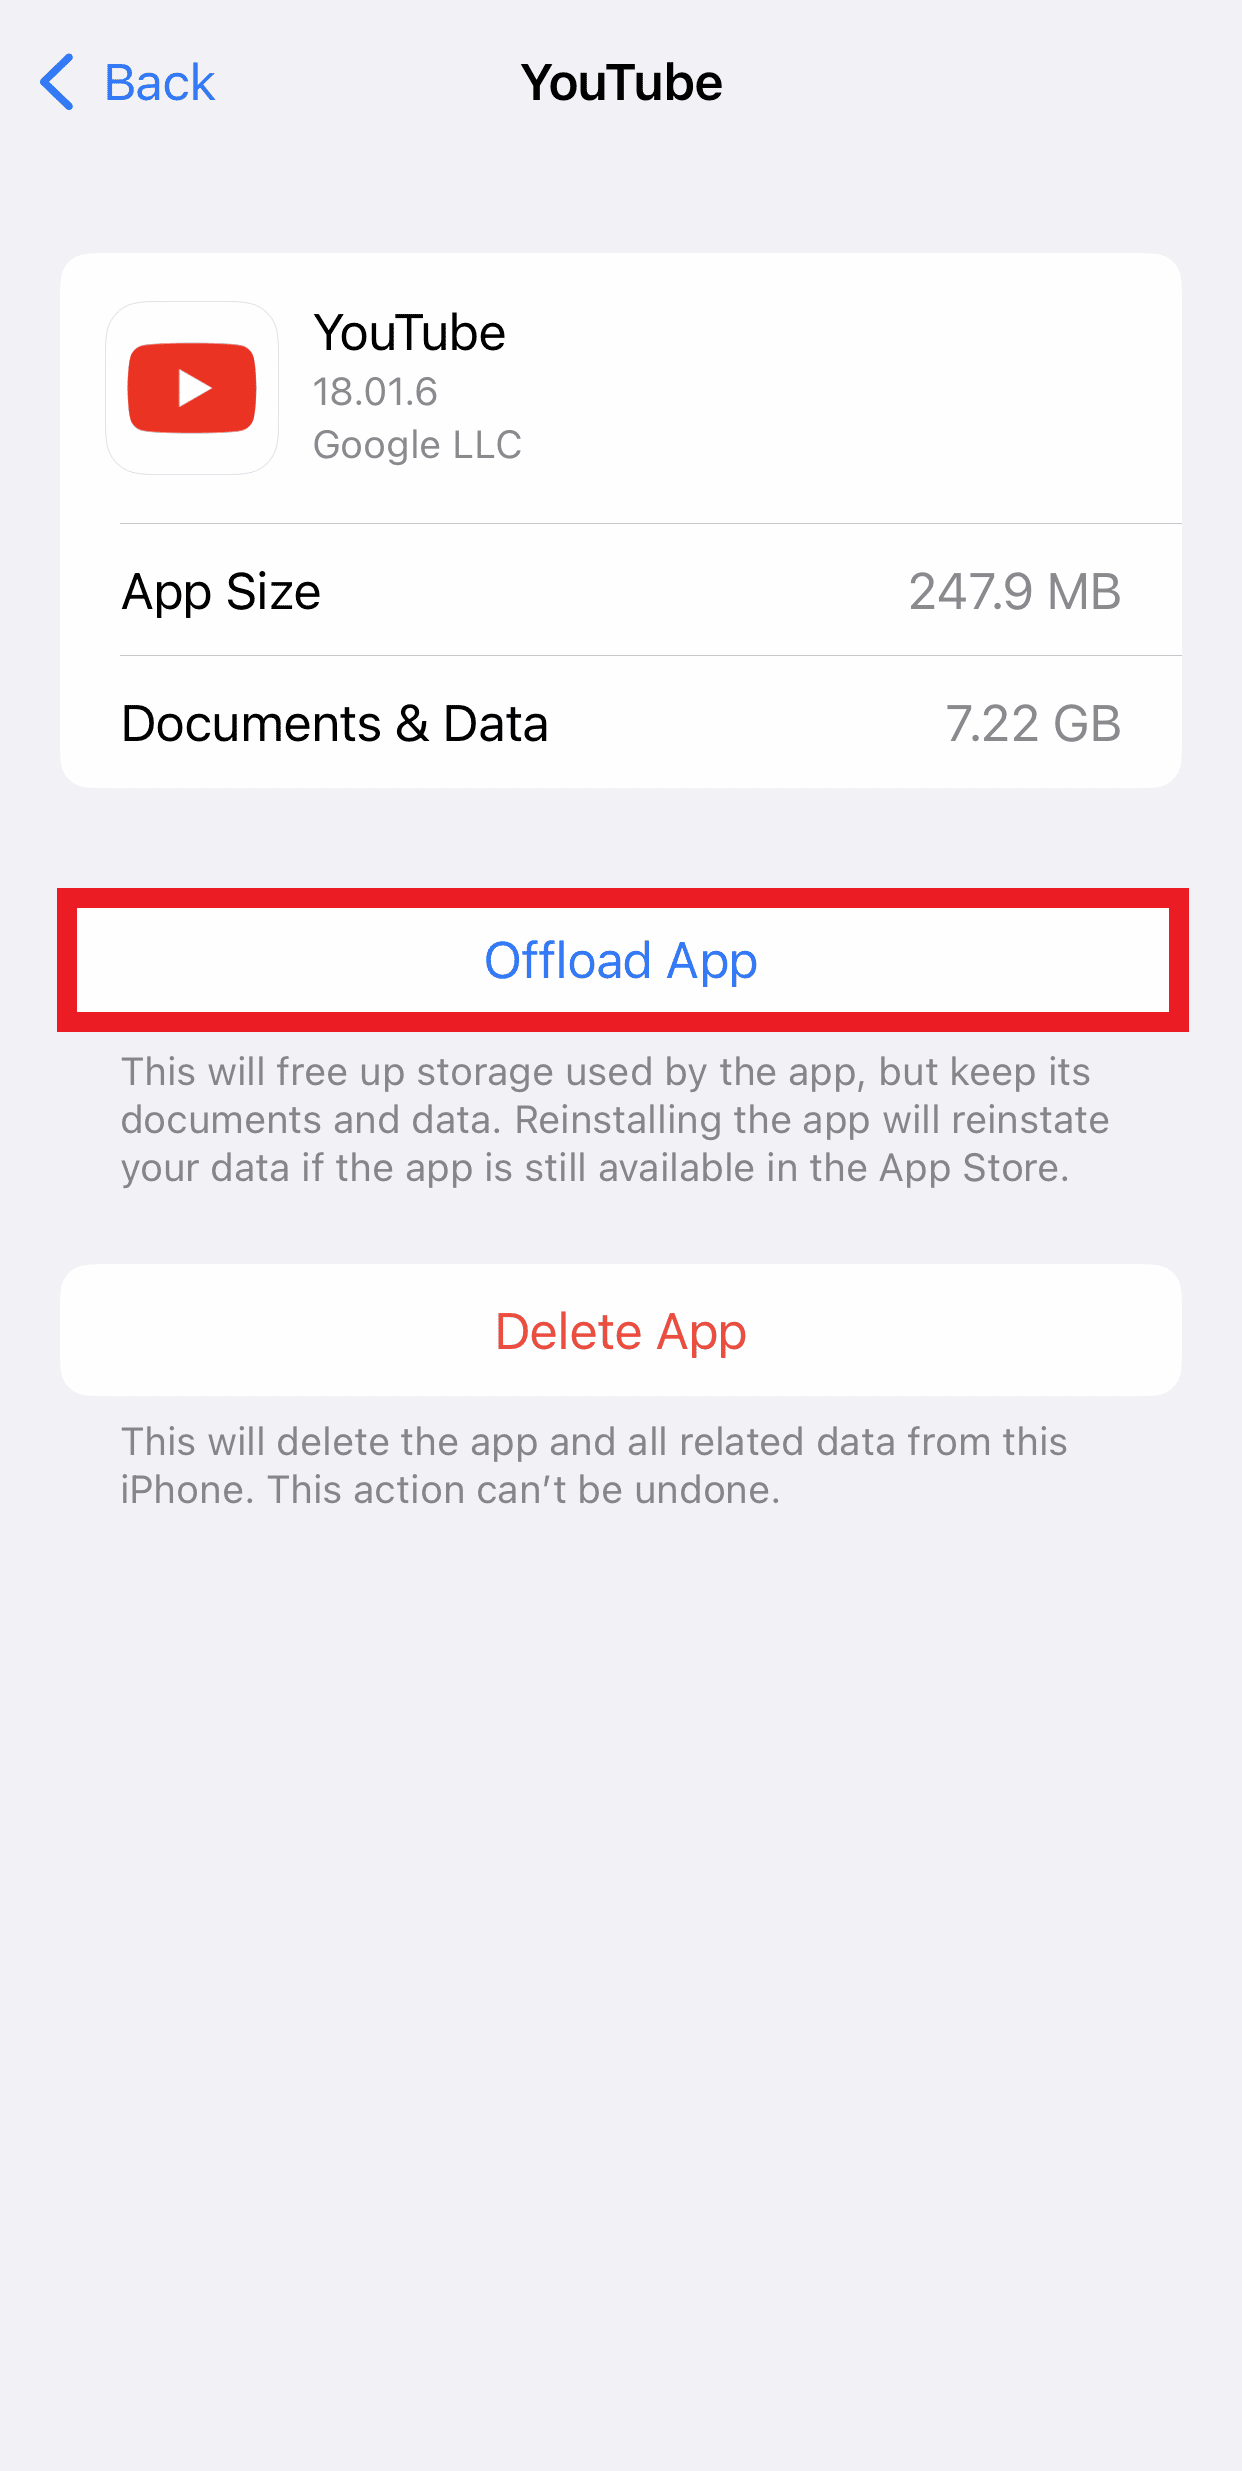 Tocca Offload App per liberare spazio di archiviazione sul tuo iPhone